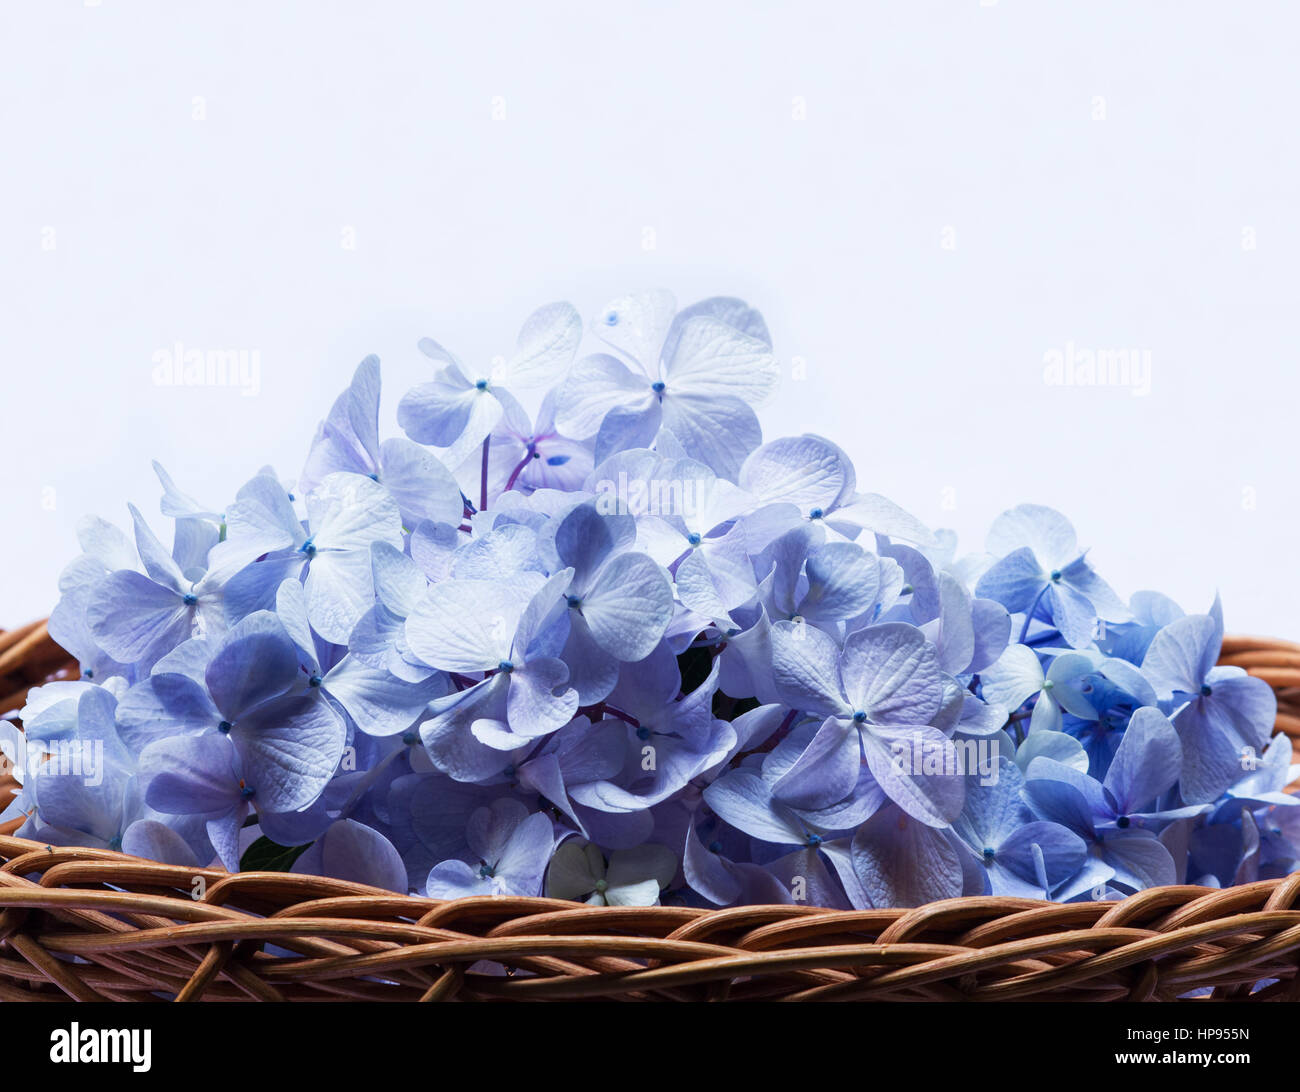 En una canasta de hortensias azules sobre fondo blanco. Foto de stock